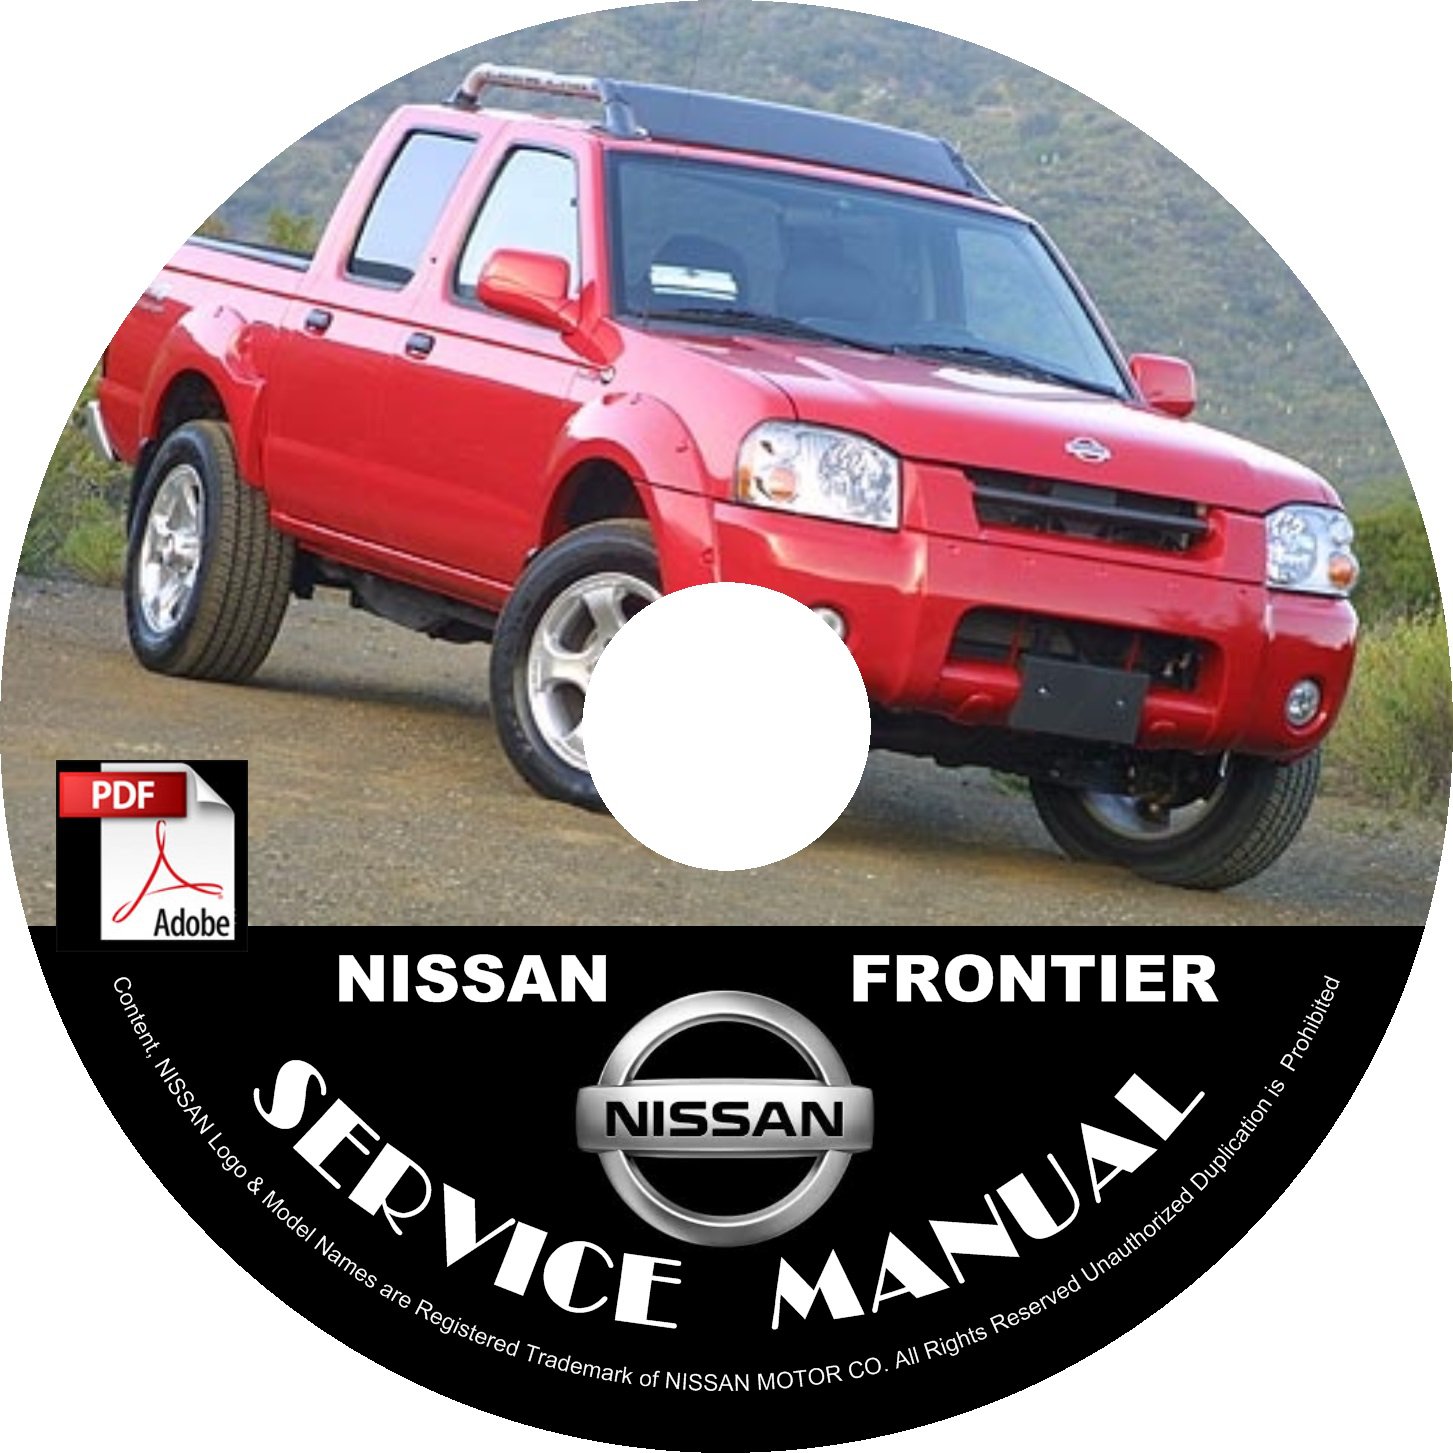 nissan frontier repair manual free download